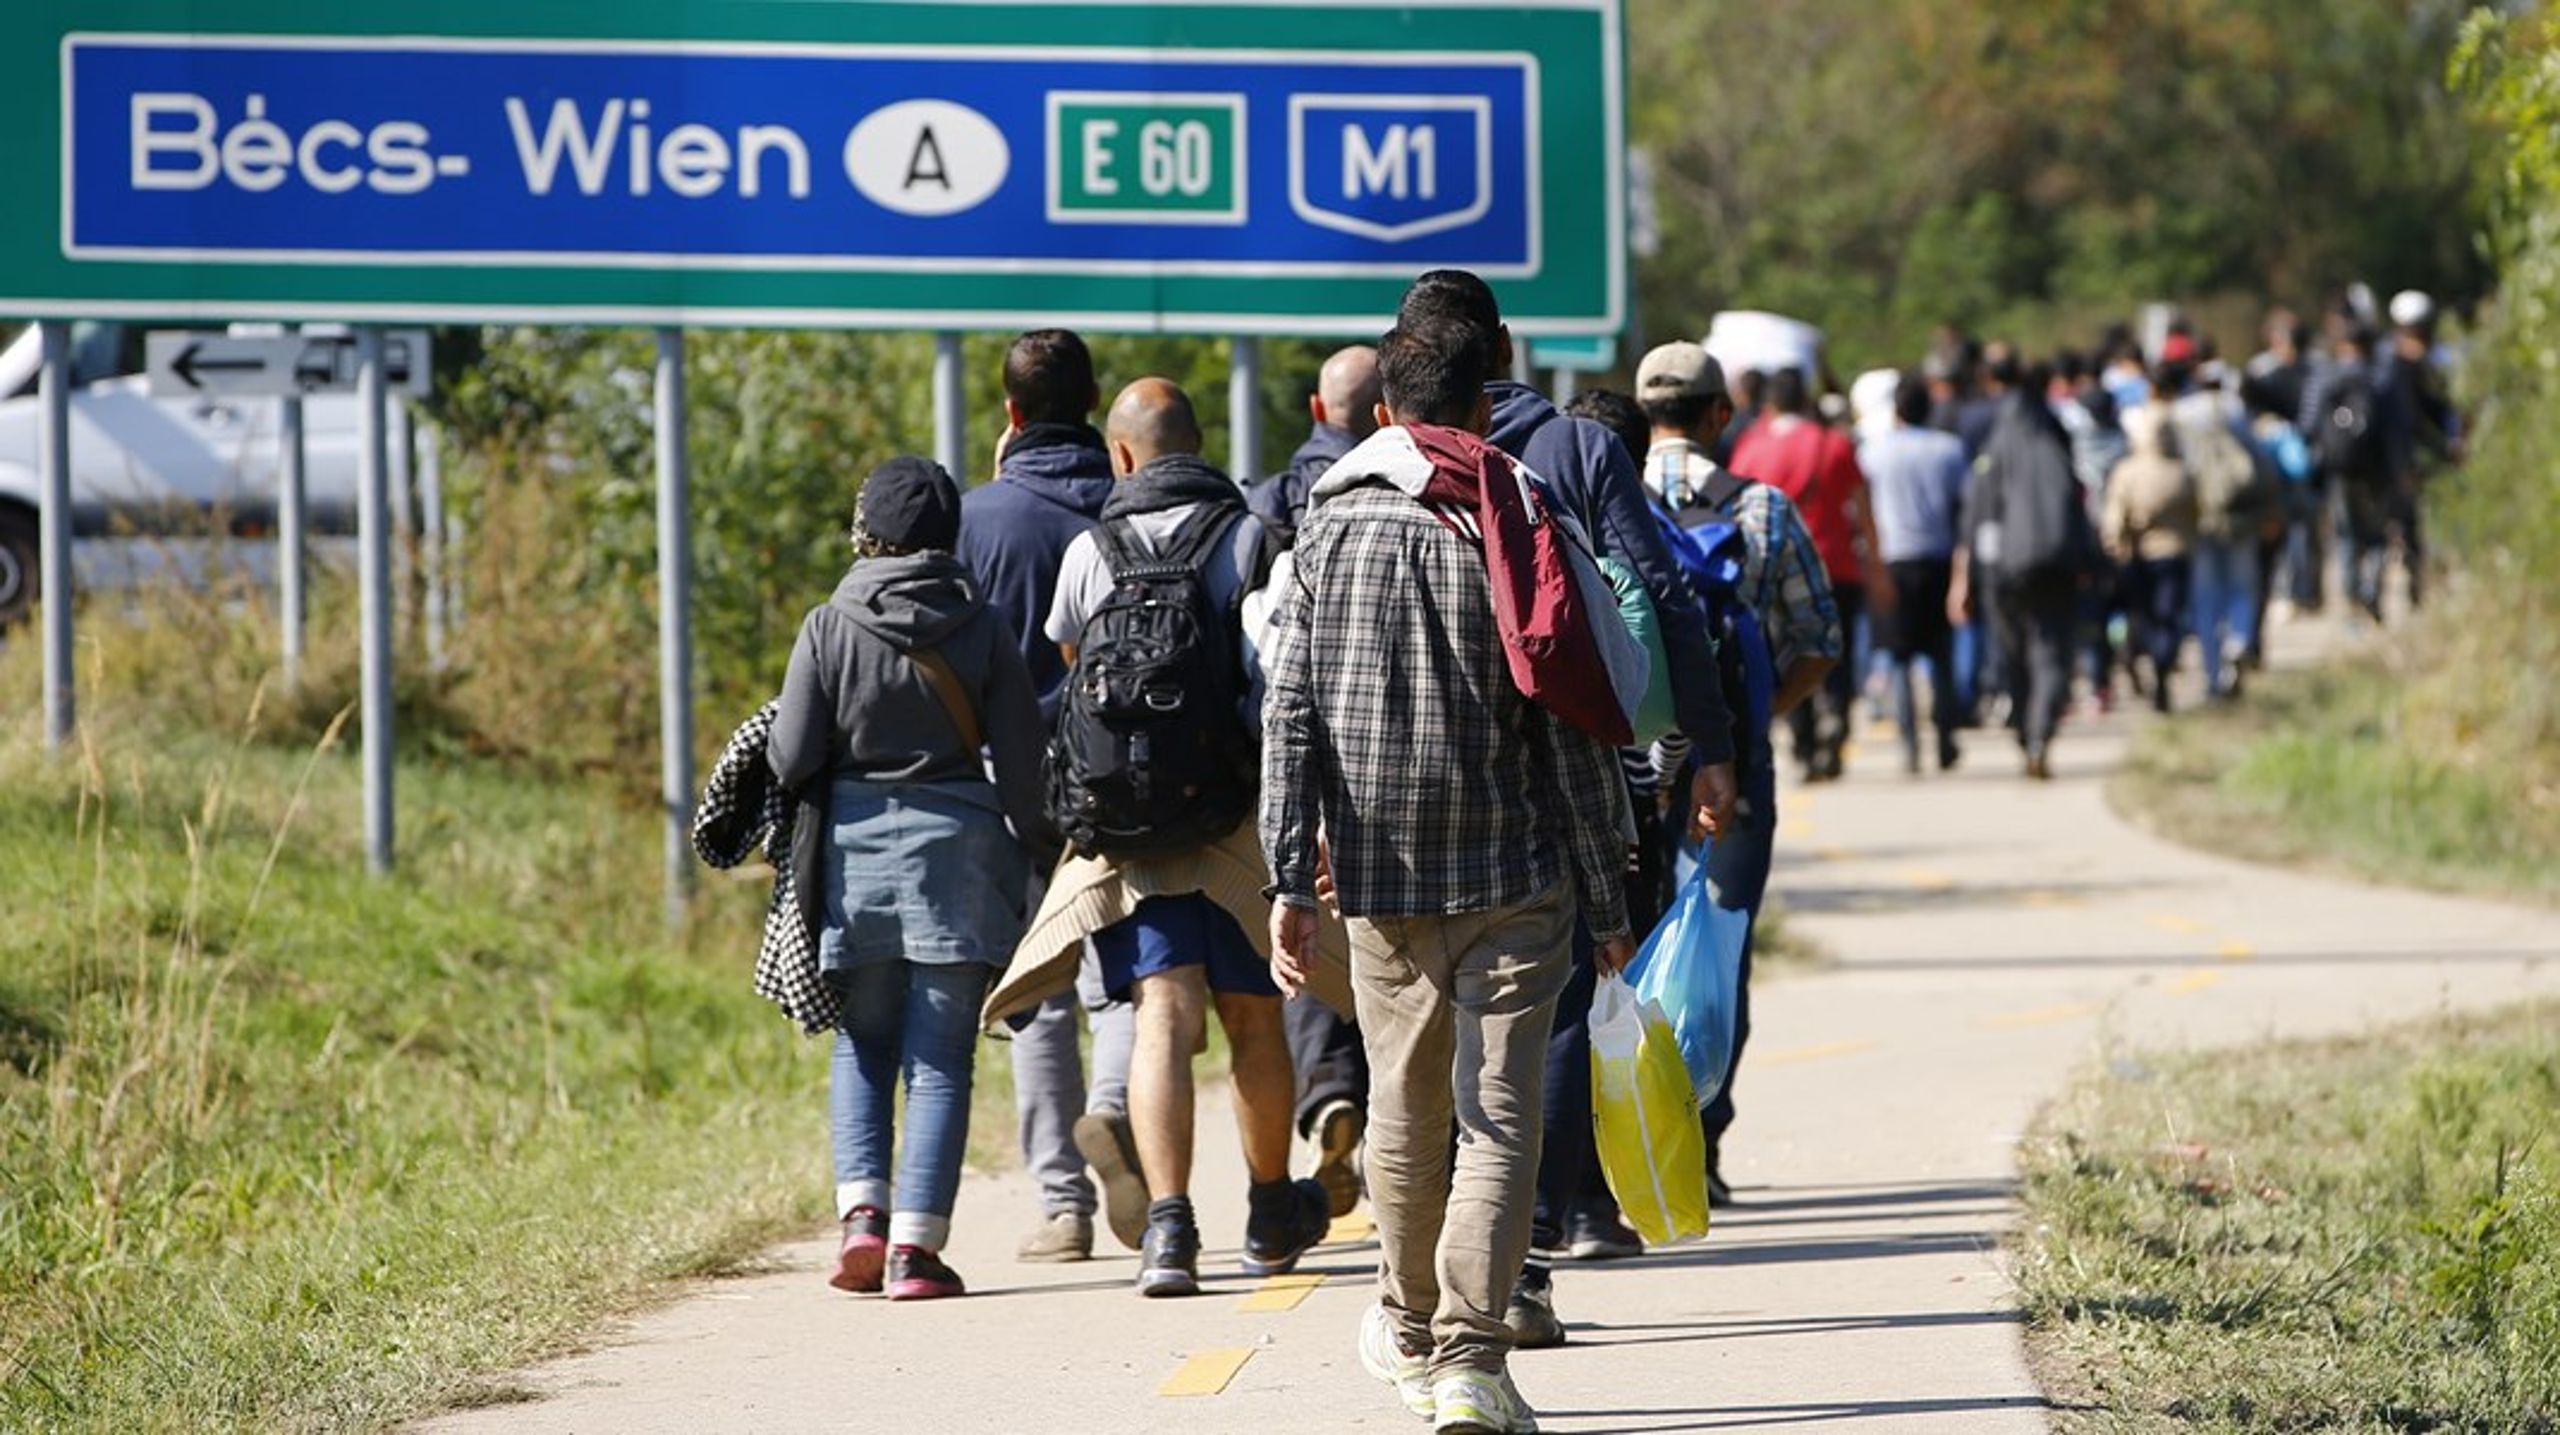 Efter heftig kritik af en ny dansk lov, der gør det juridisk muligt at sende asylansøgere til modtagecentre uden for landet, har EU-Kommissionen påbegyndt en dialog med de danske myndigheder.